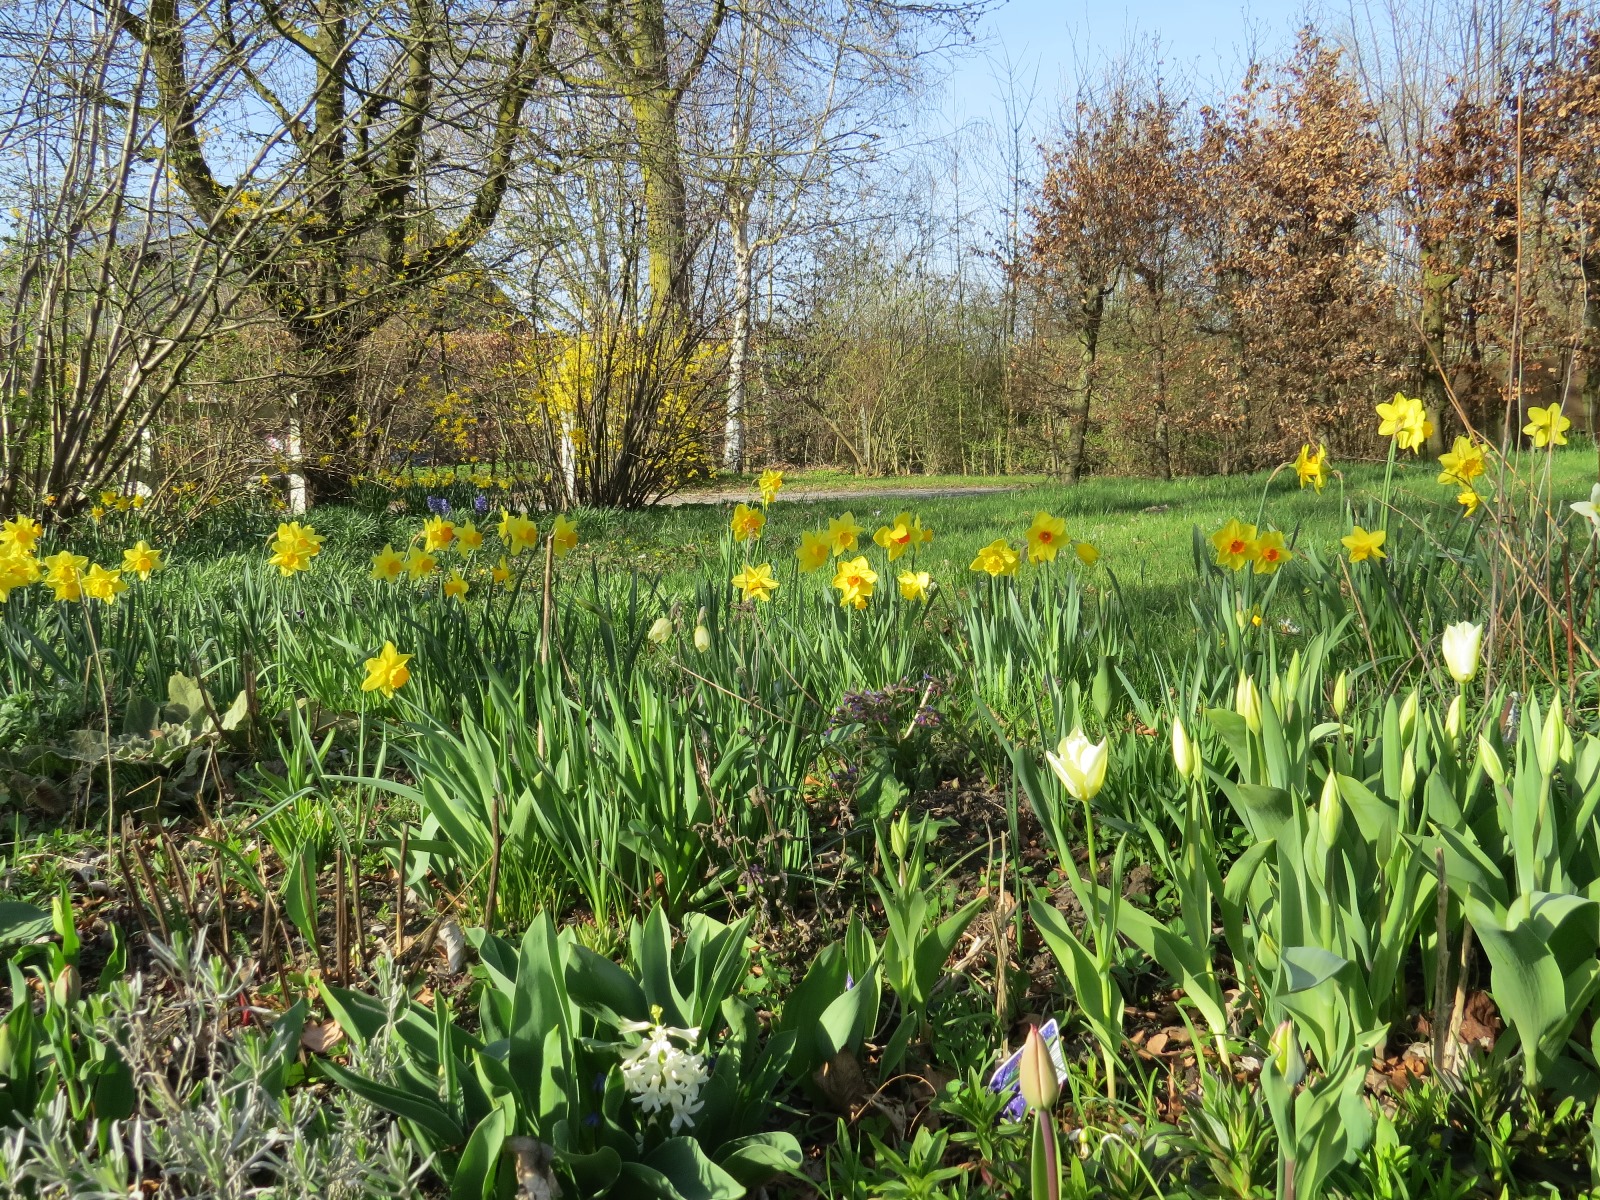 bloemenveld in het park, met o.a. tulpen en narcissen